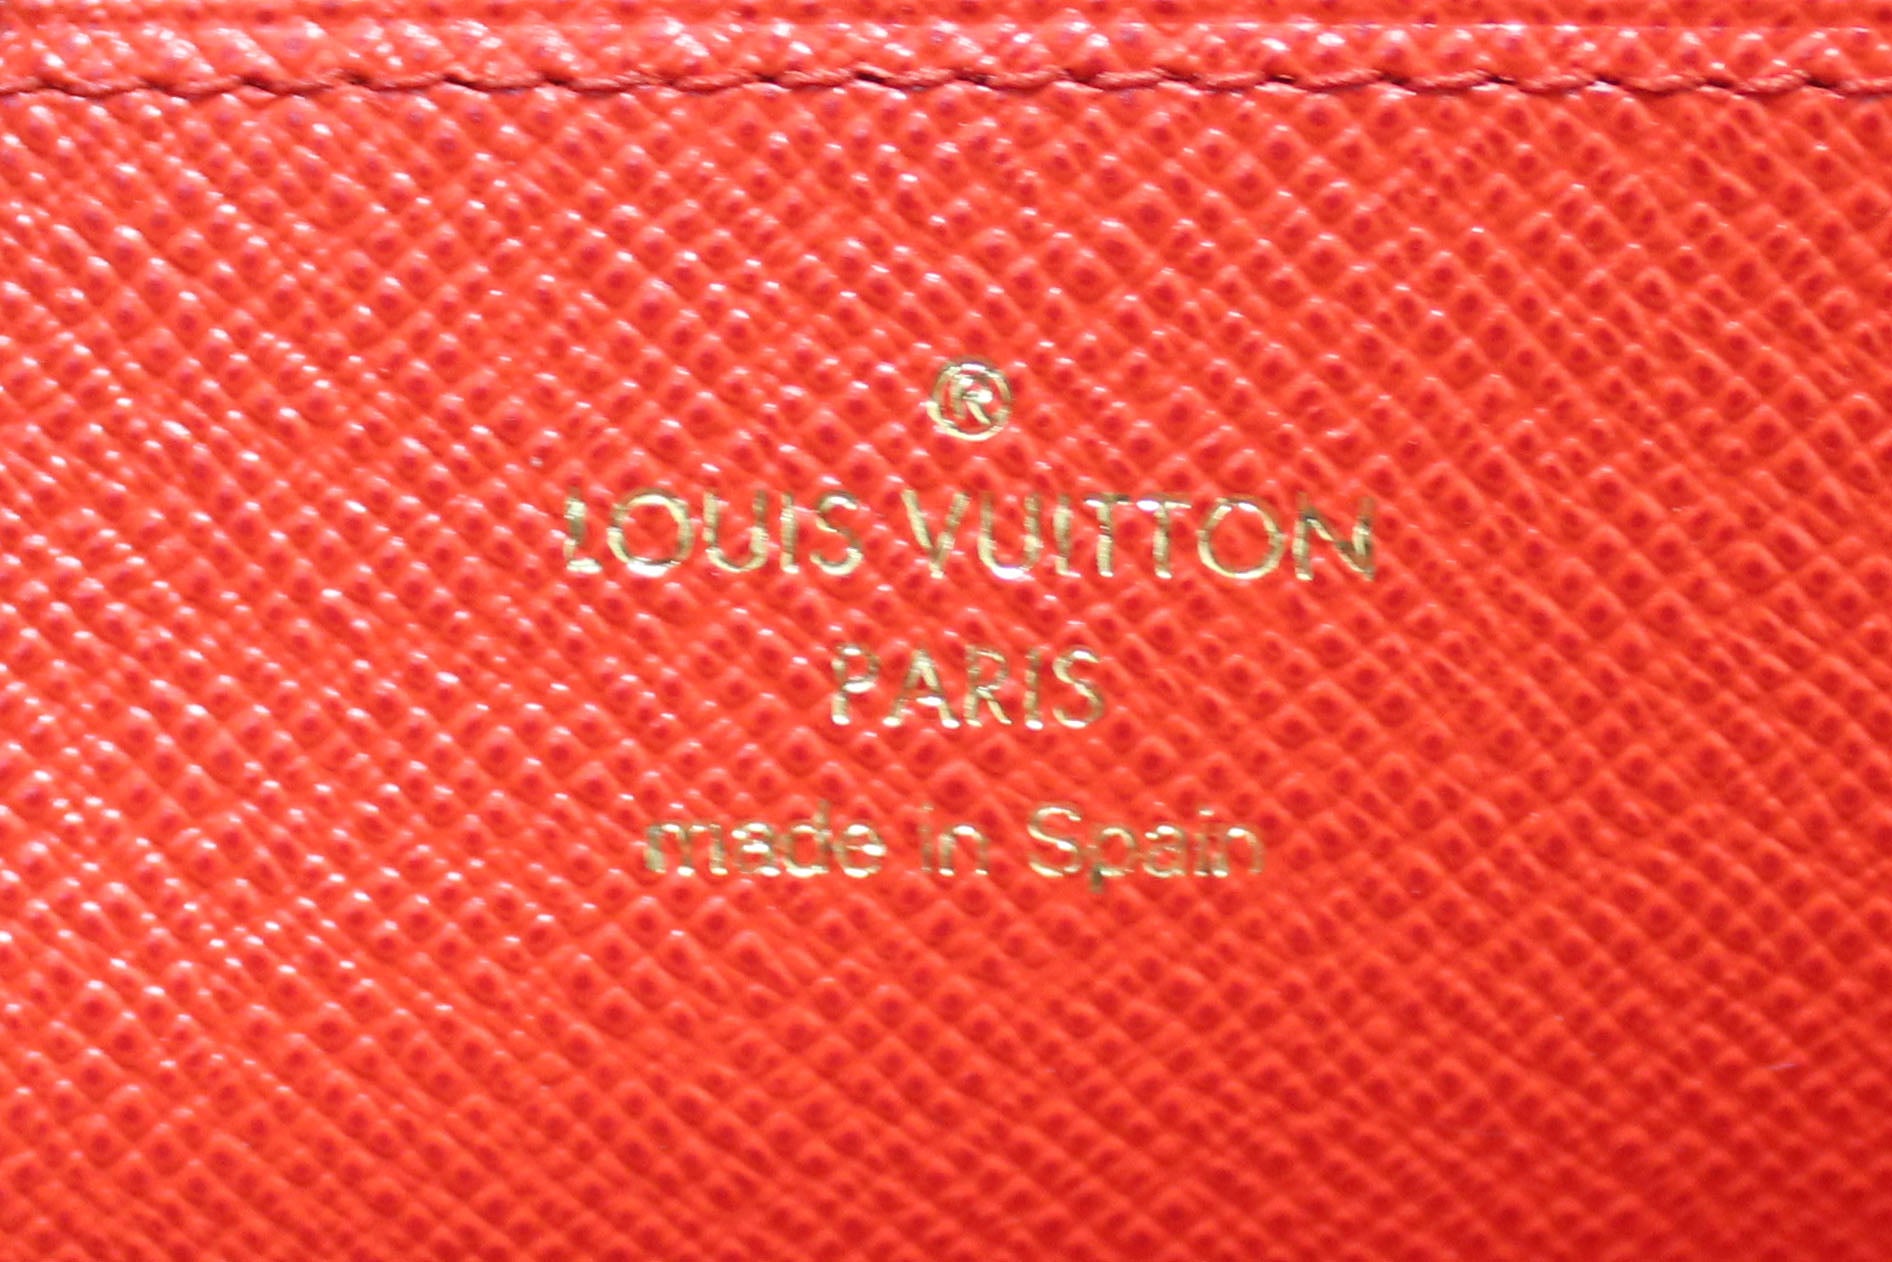 Louis Vuitton Supreme Zippy Organizer Wallet